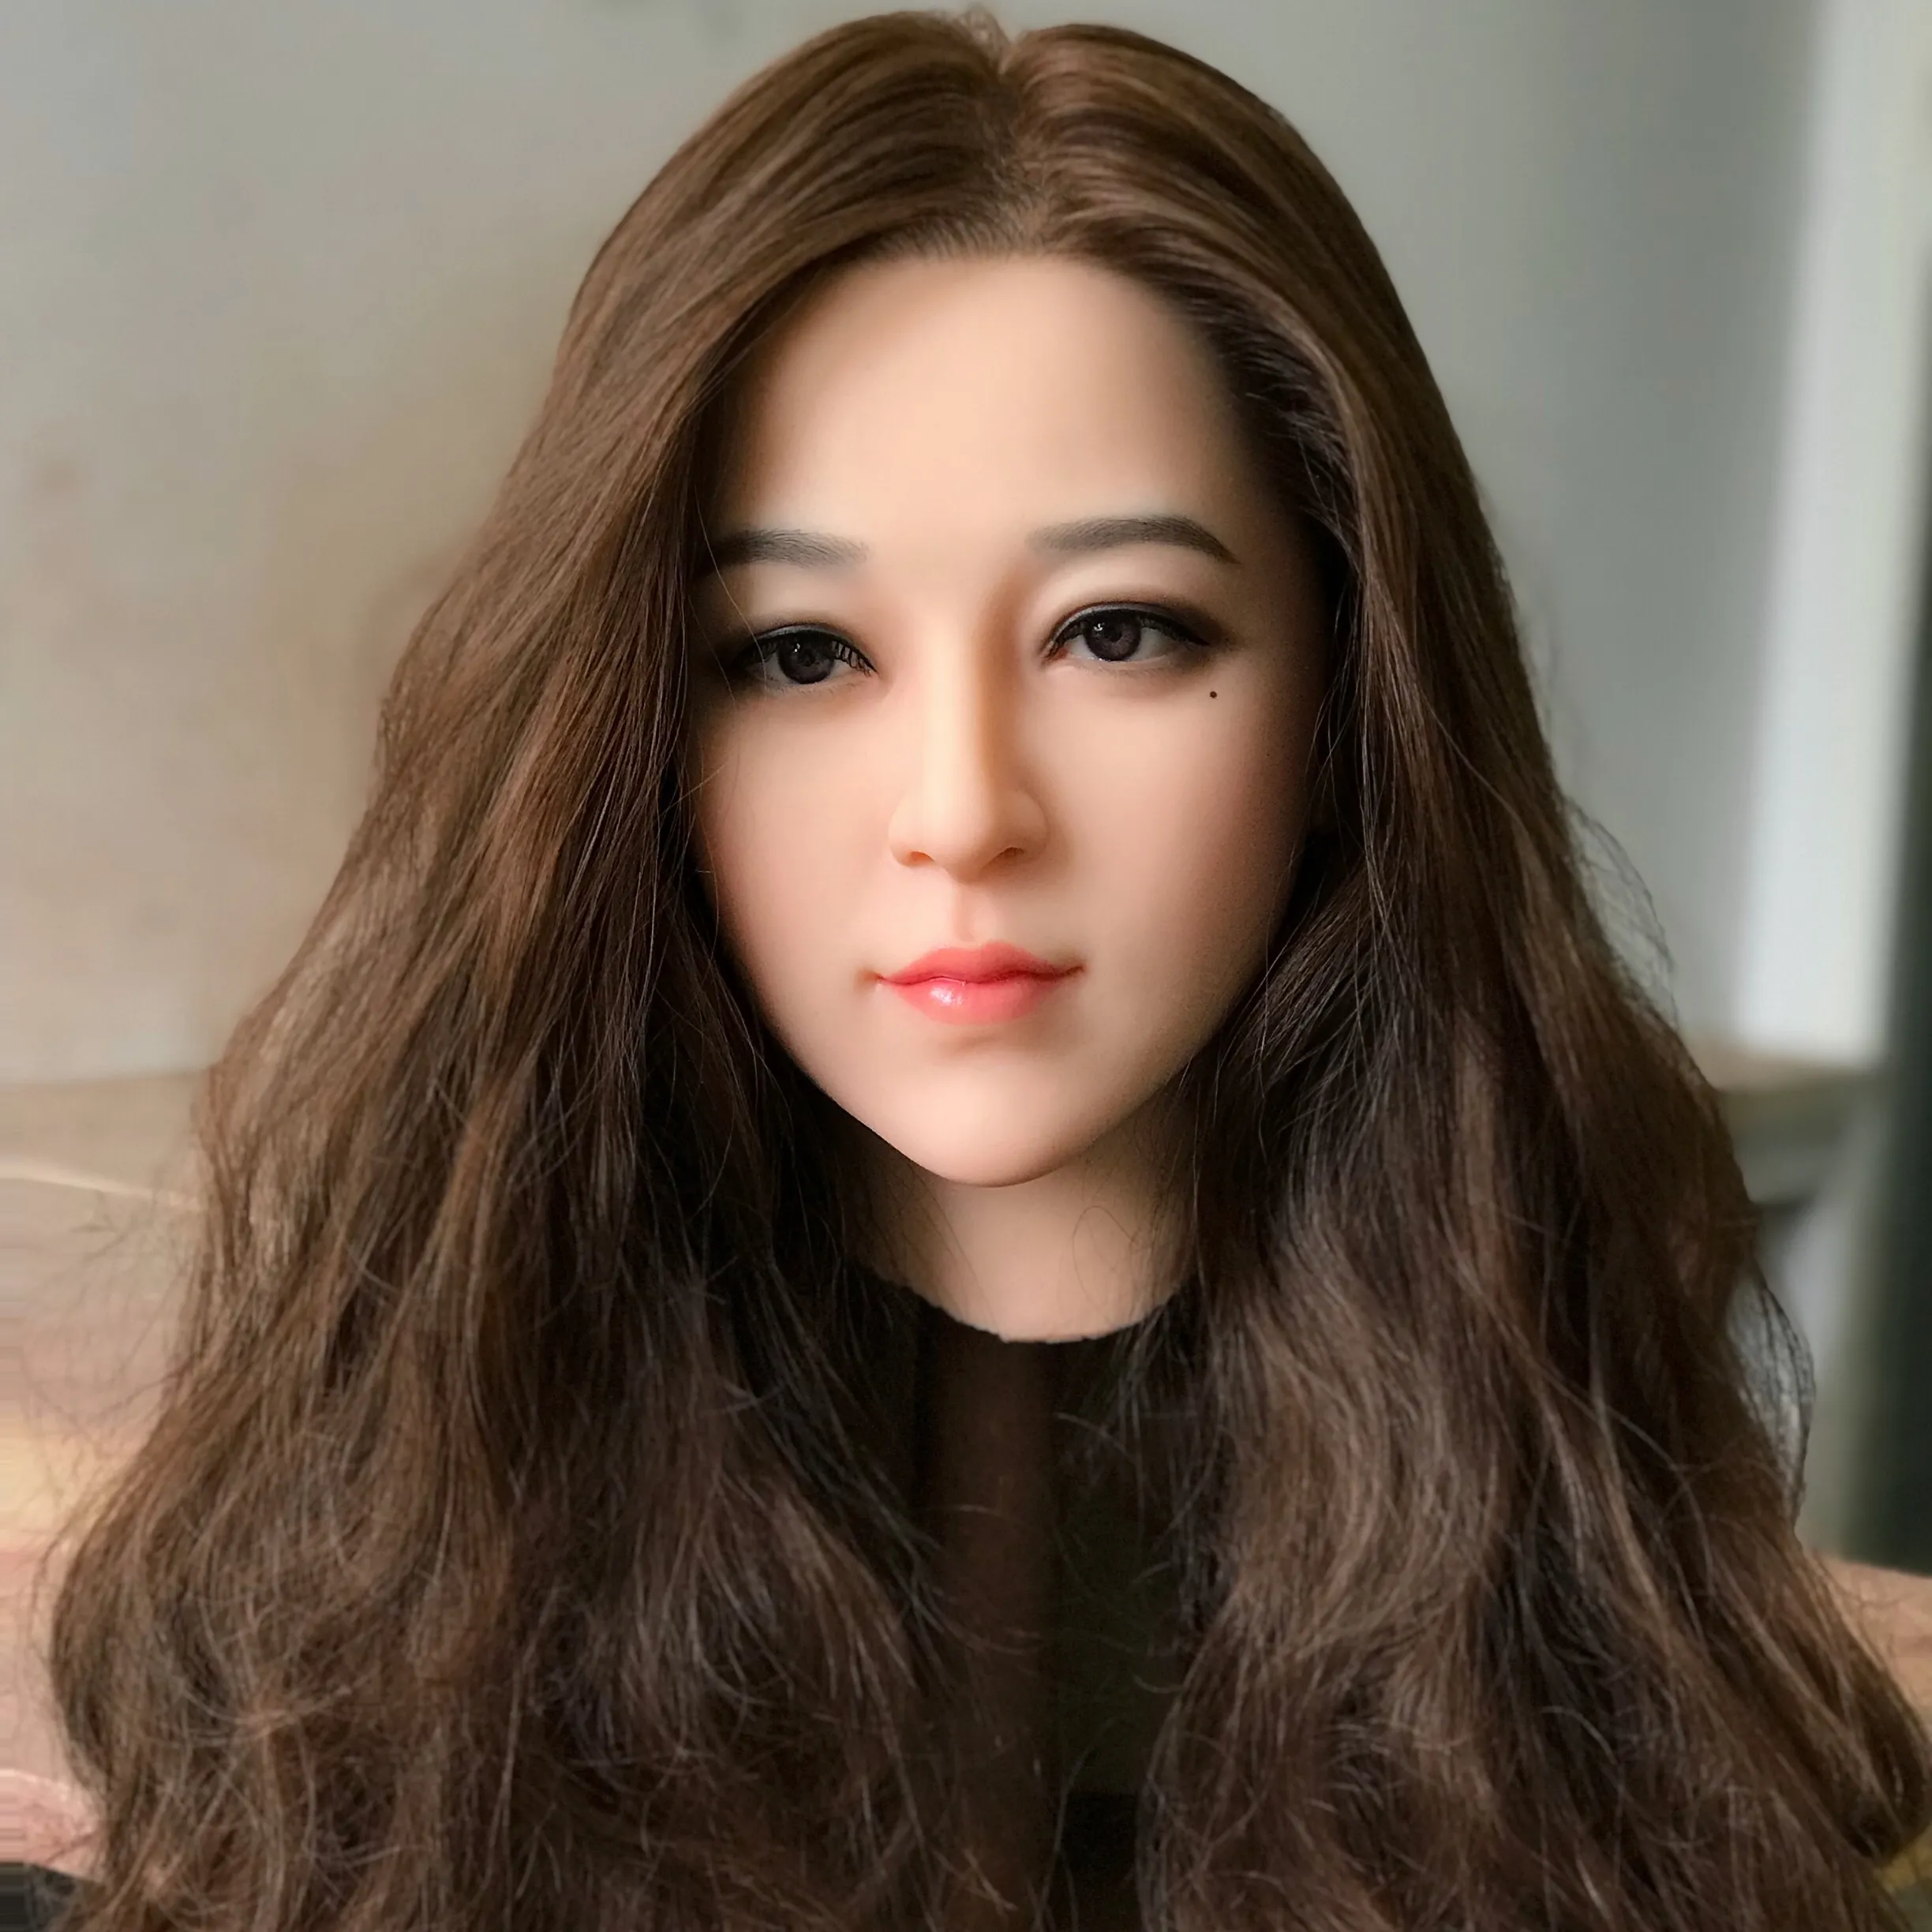 현실적인 조각 실물 크기 수제 공예 생생한 아시아 예쁜 소녀 여성 장난감 동상 실리콘 왁스 아름다움 그림 판매